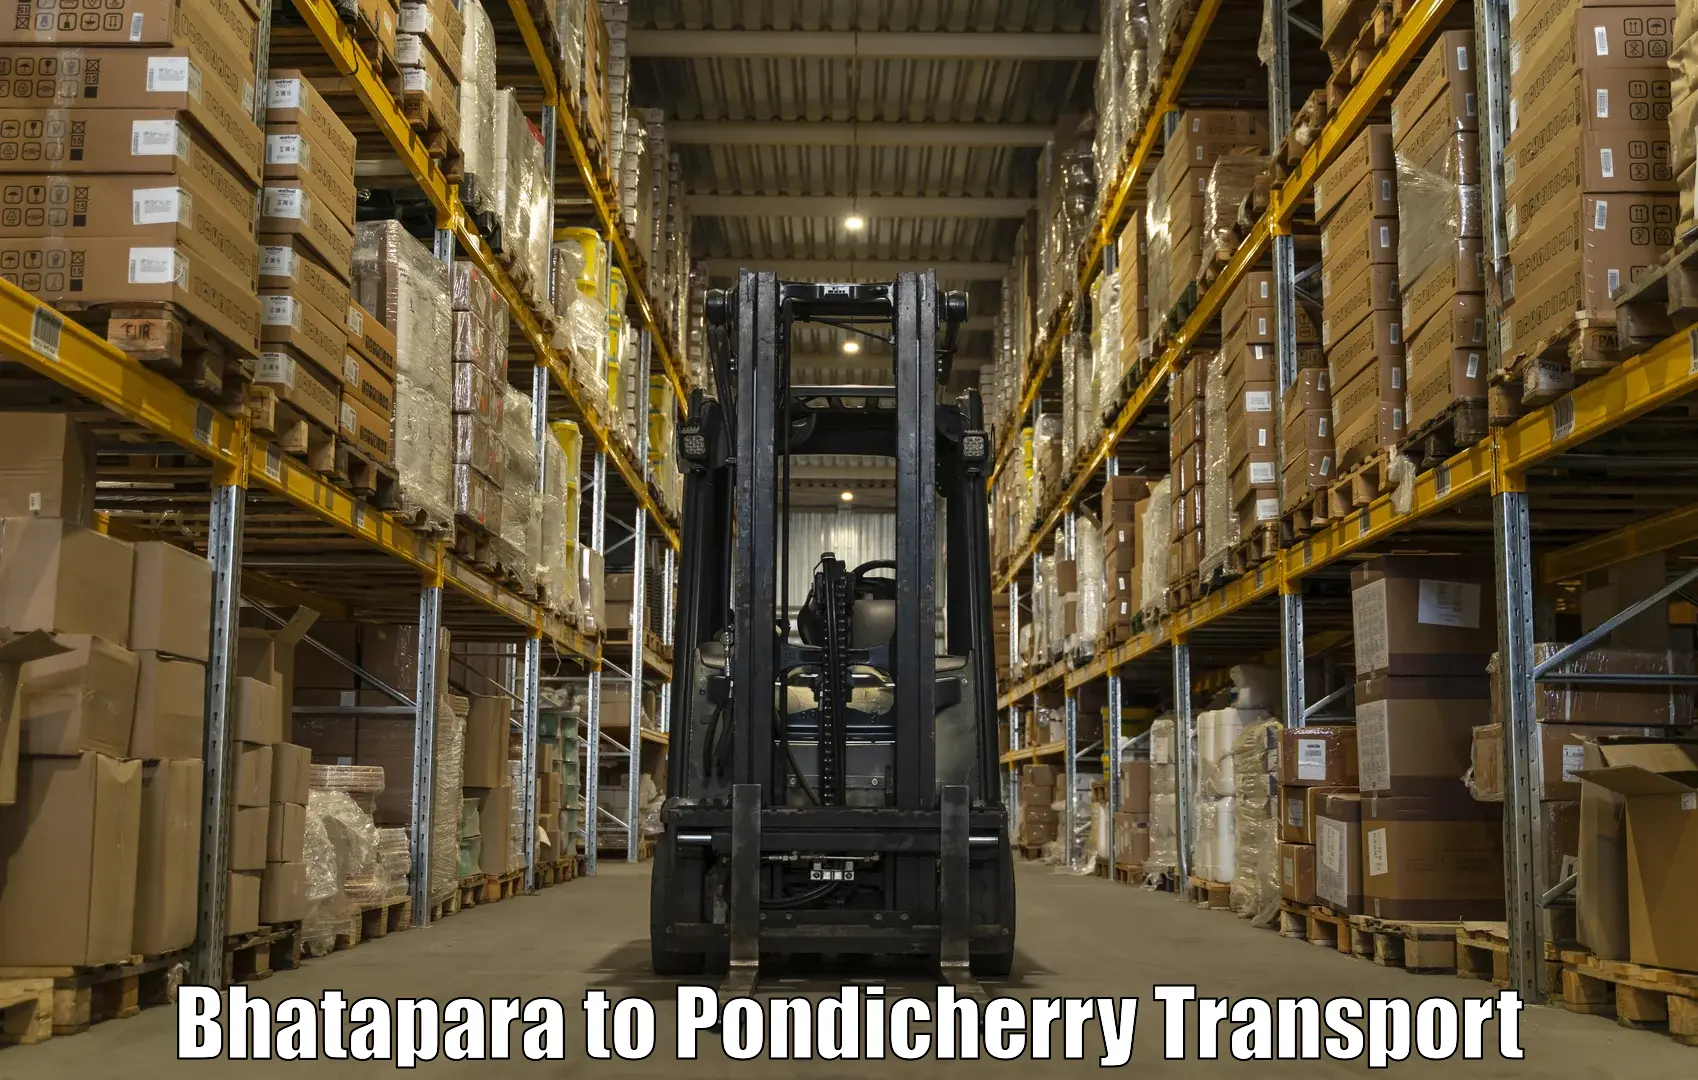 Intercity transport Bhatapara to Pondicherry